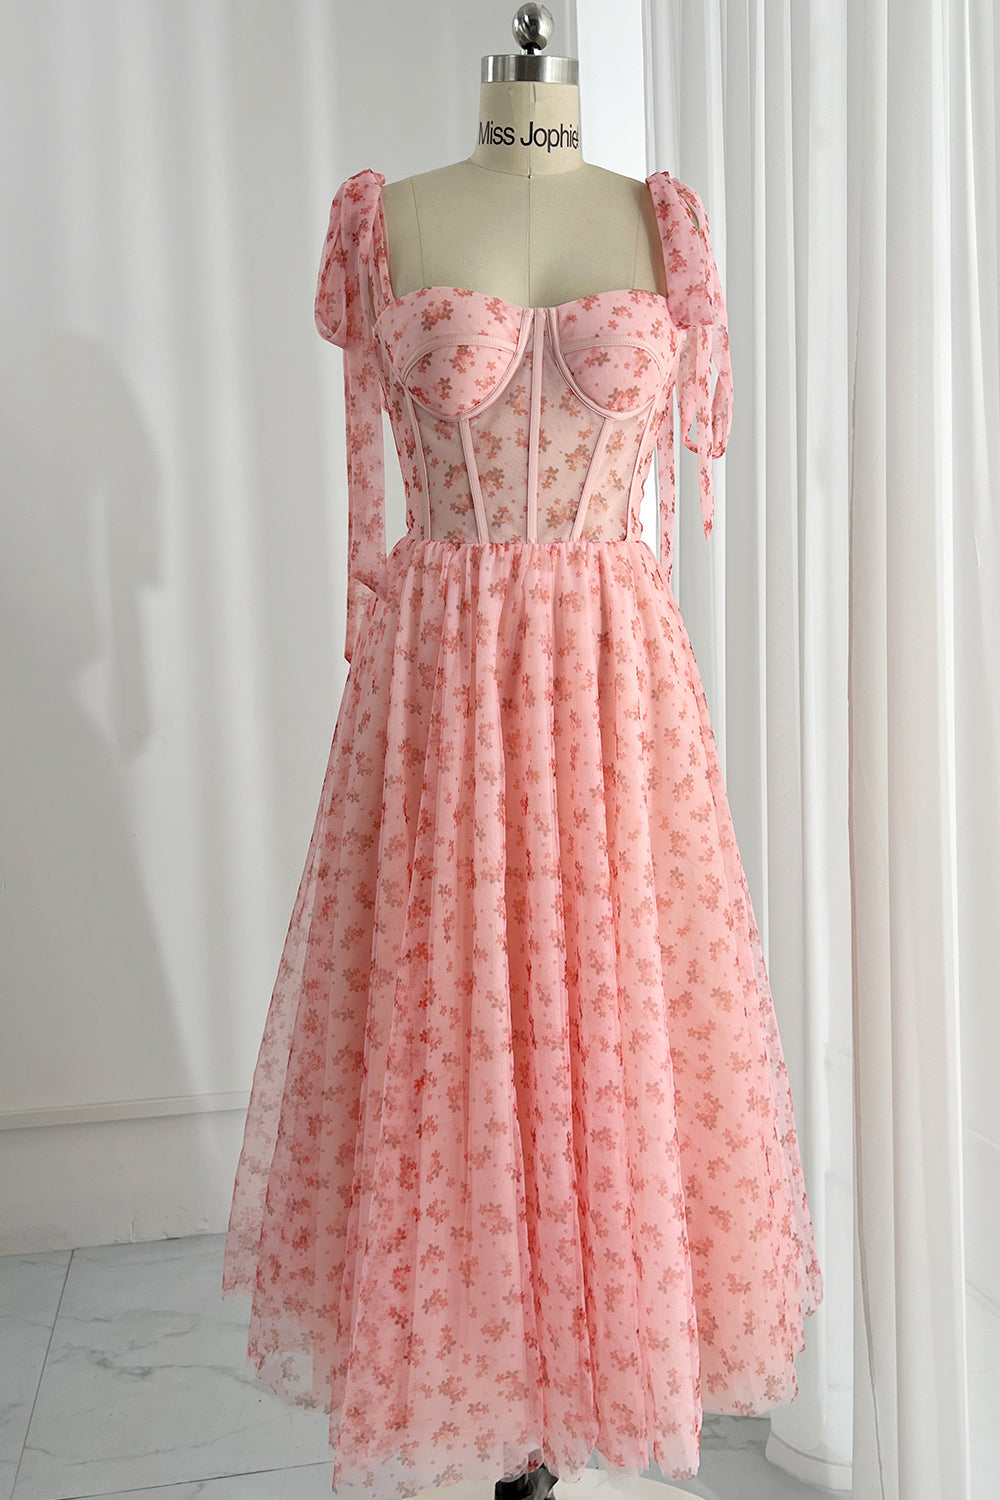 MissJophiel Corset Top Illusion Midi Floral Dress with removable straps